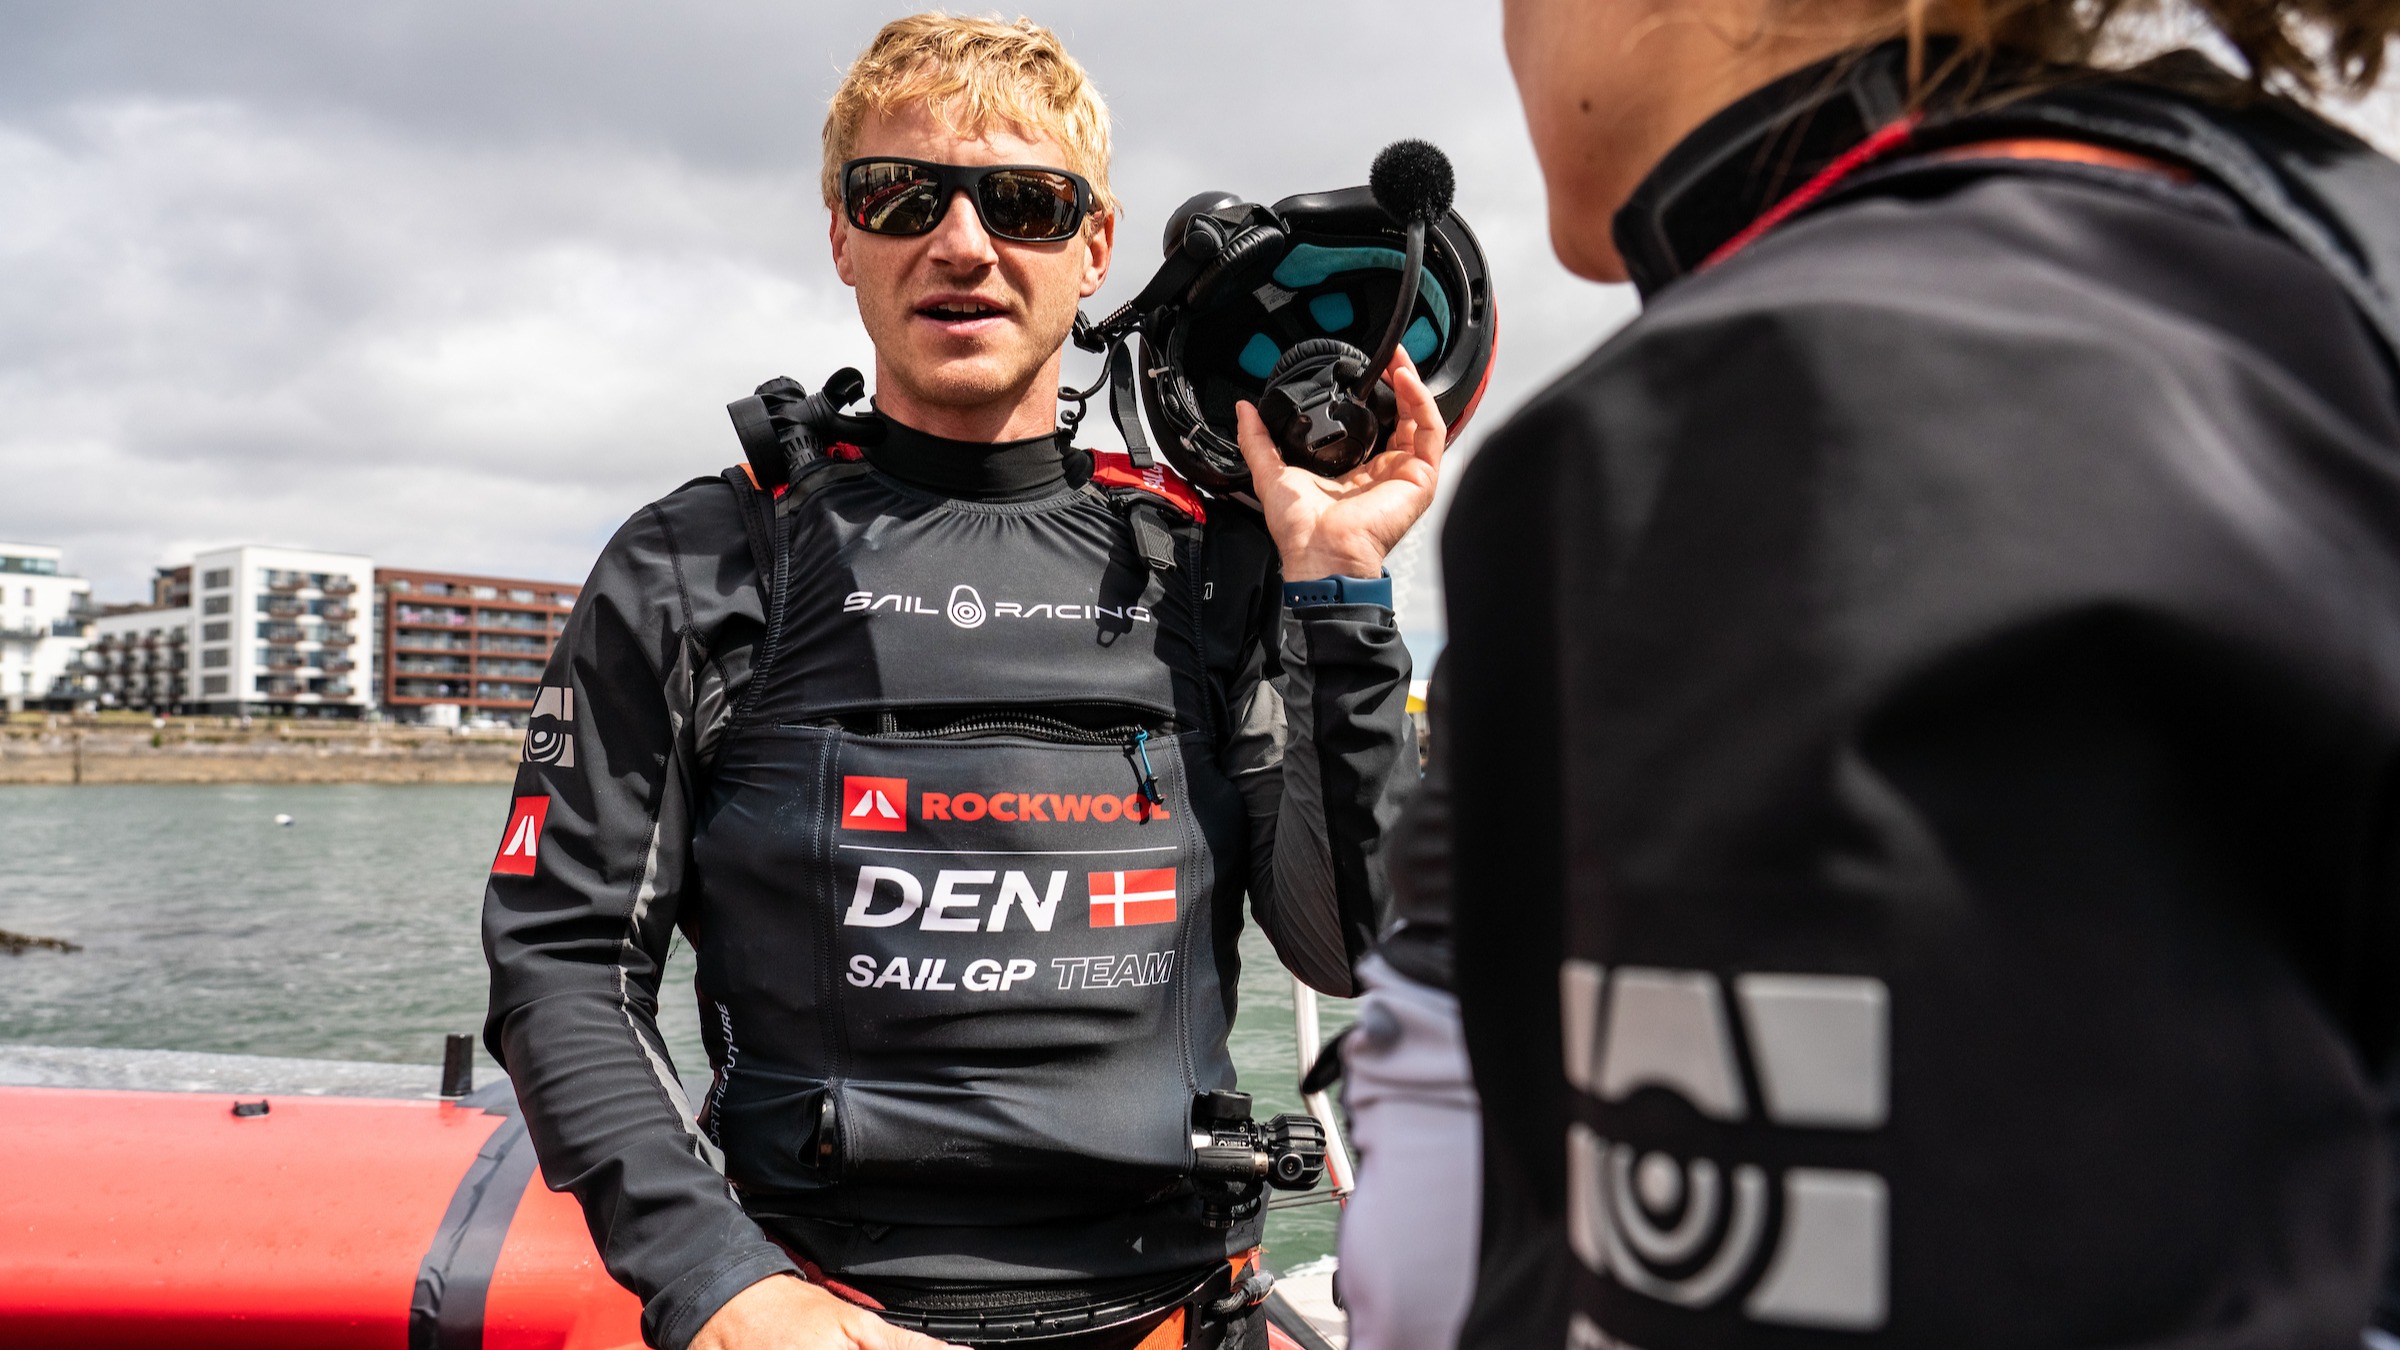 Season 3 // Denmark SailGP Team // Nicolai Sehested in between racing